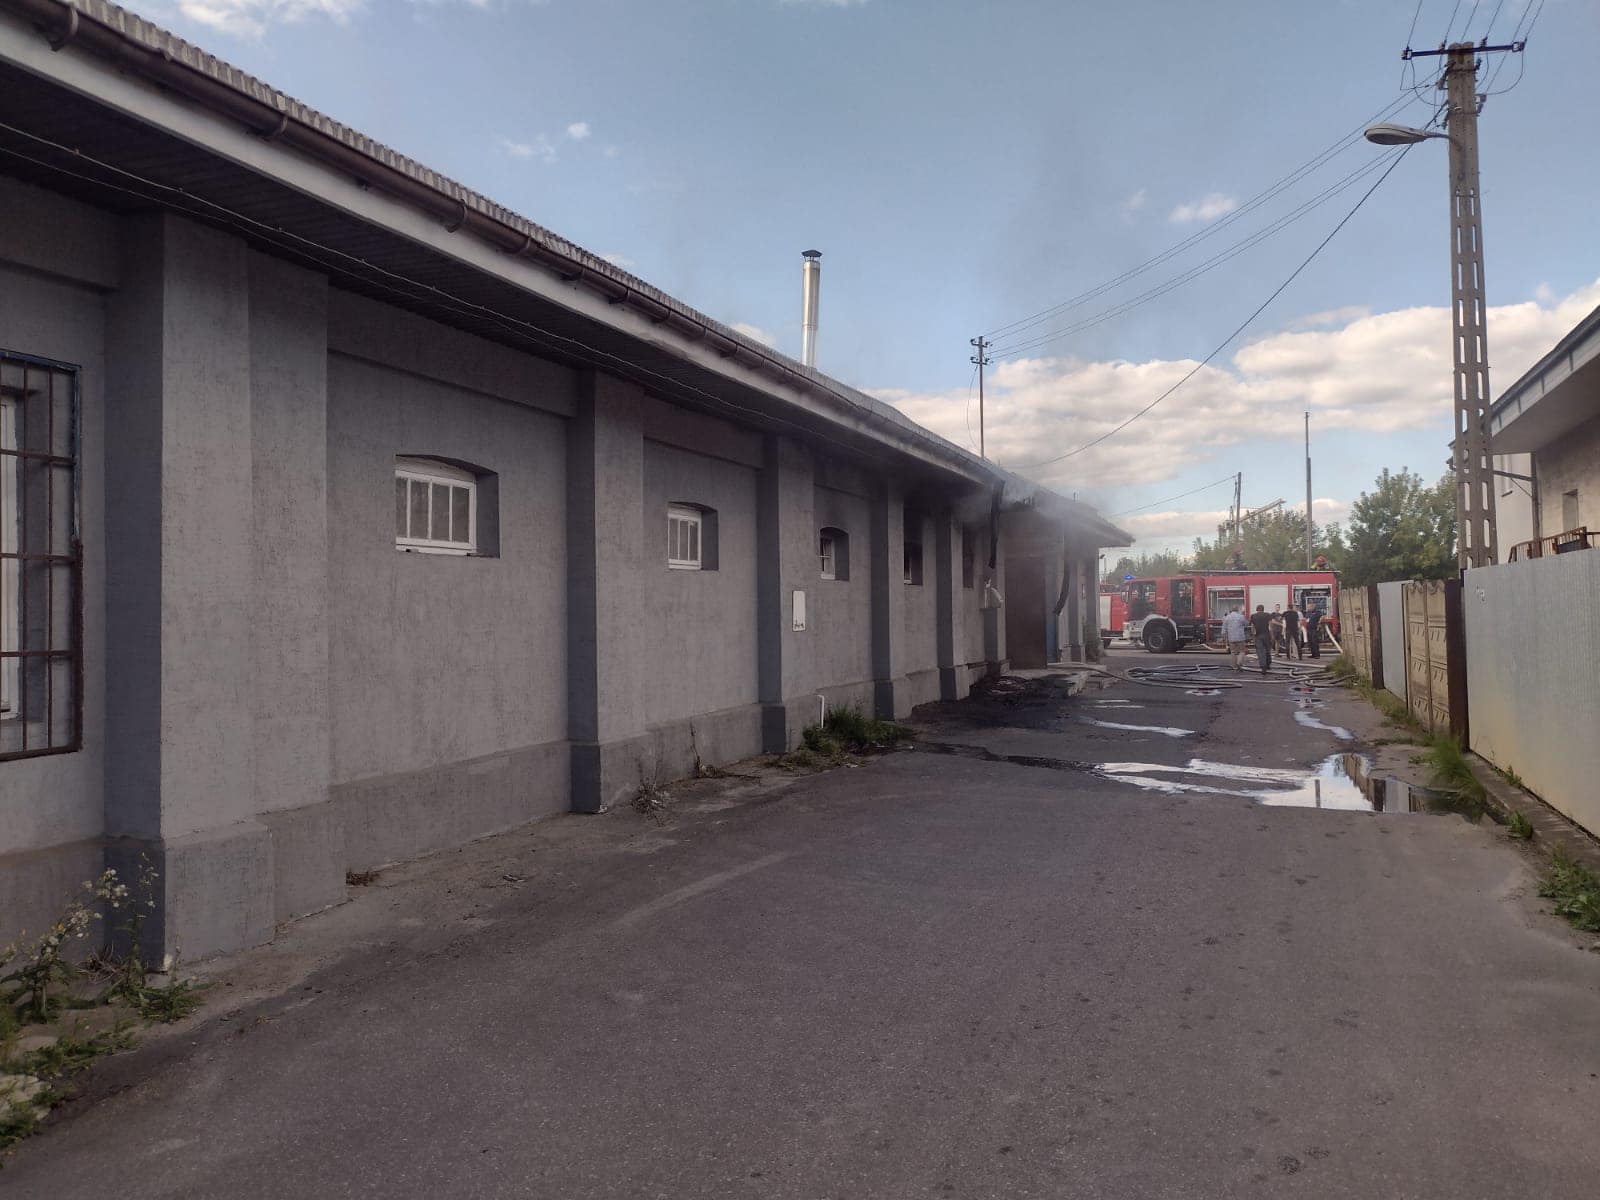 Kilkudziesięciu strażaków walczyło z pożarem sklepu meblowego. „Ogień wydobywał się przez otwory okienne i dach” (zdjęcia)